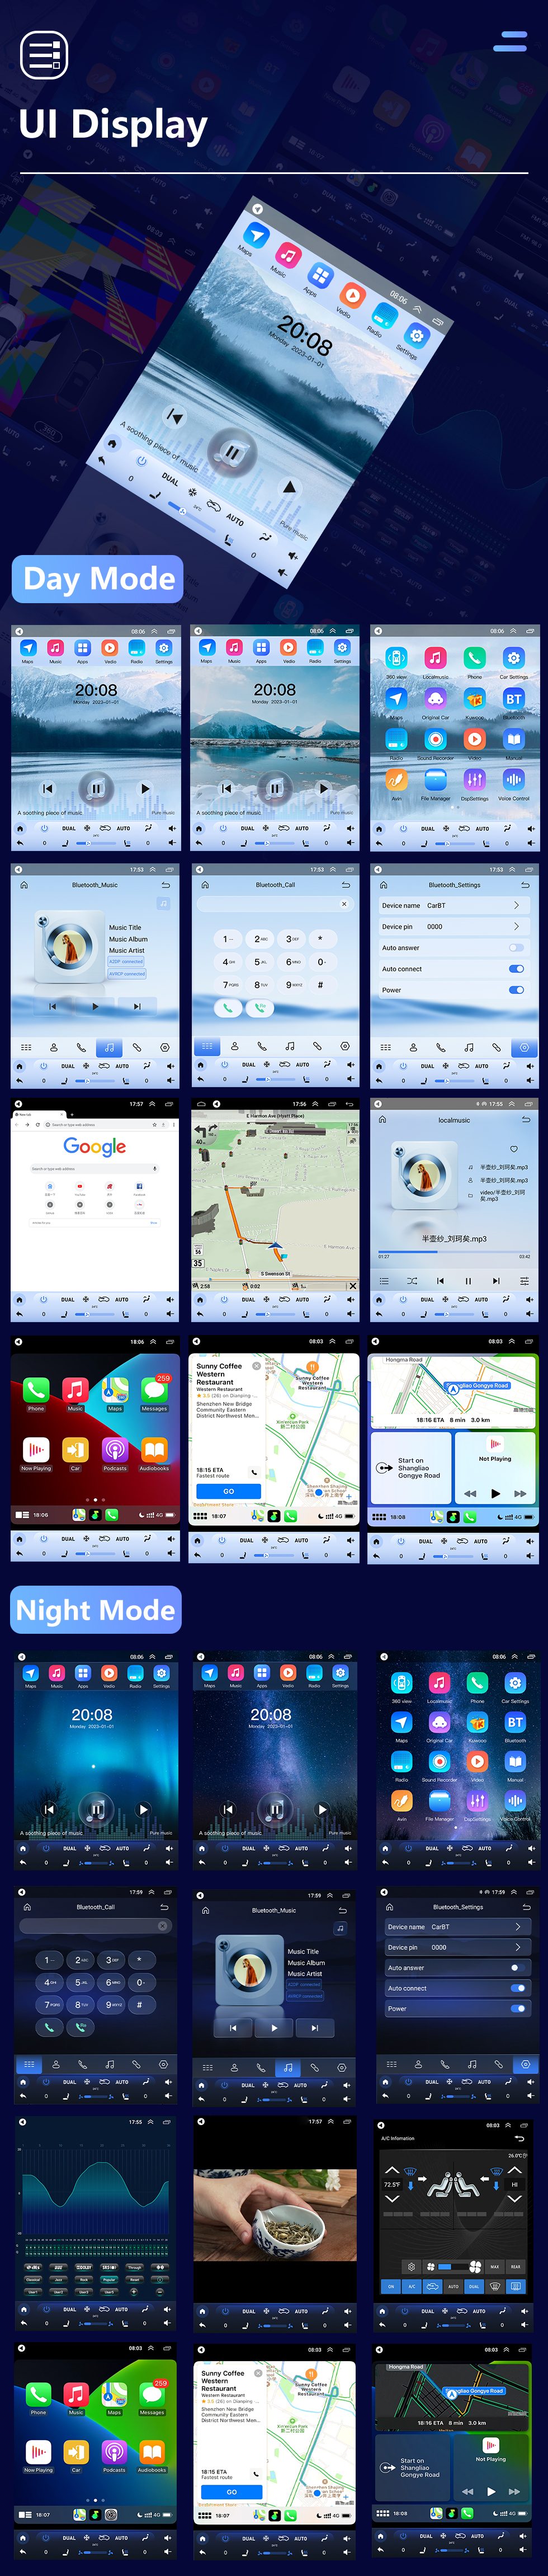 Seicane Android 10.0 9,7 pouces pour 2008-2012 AUDI A3 Radio avec écran tactile HD Système de navigation GPS Prise en charge Bluetooth Carplay TPMS